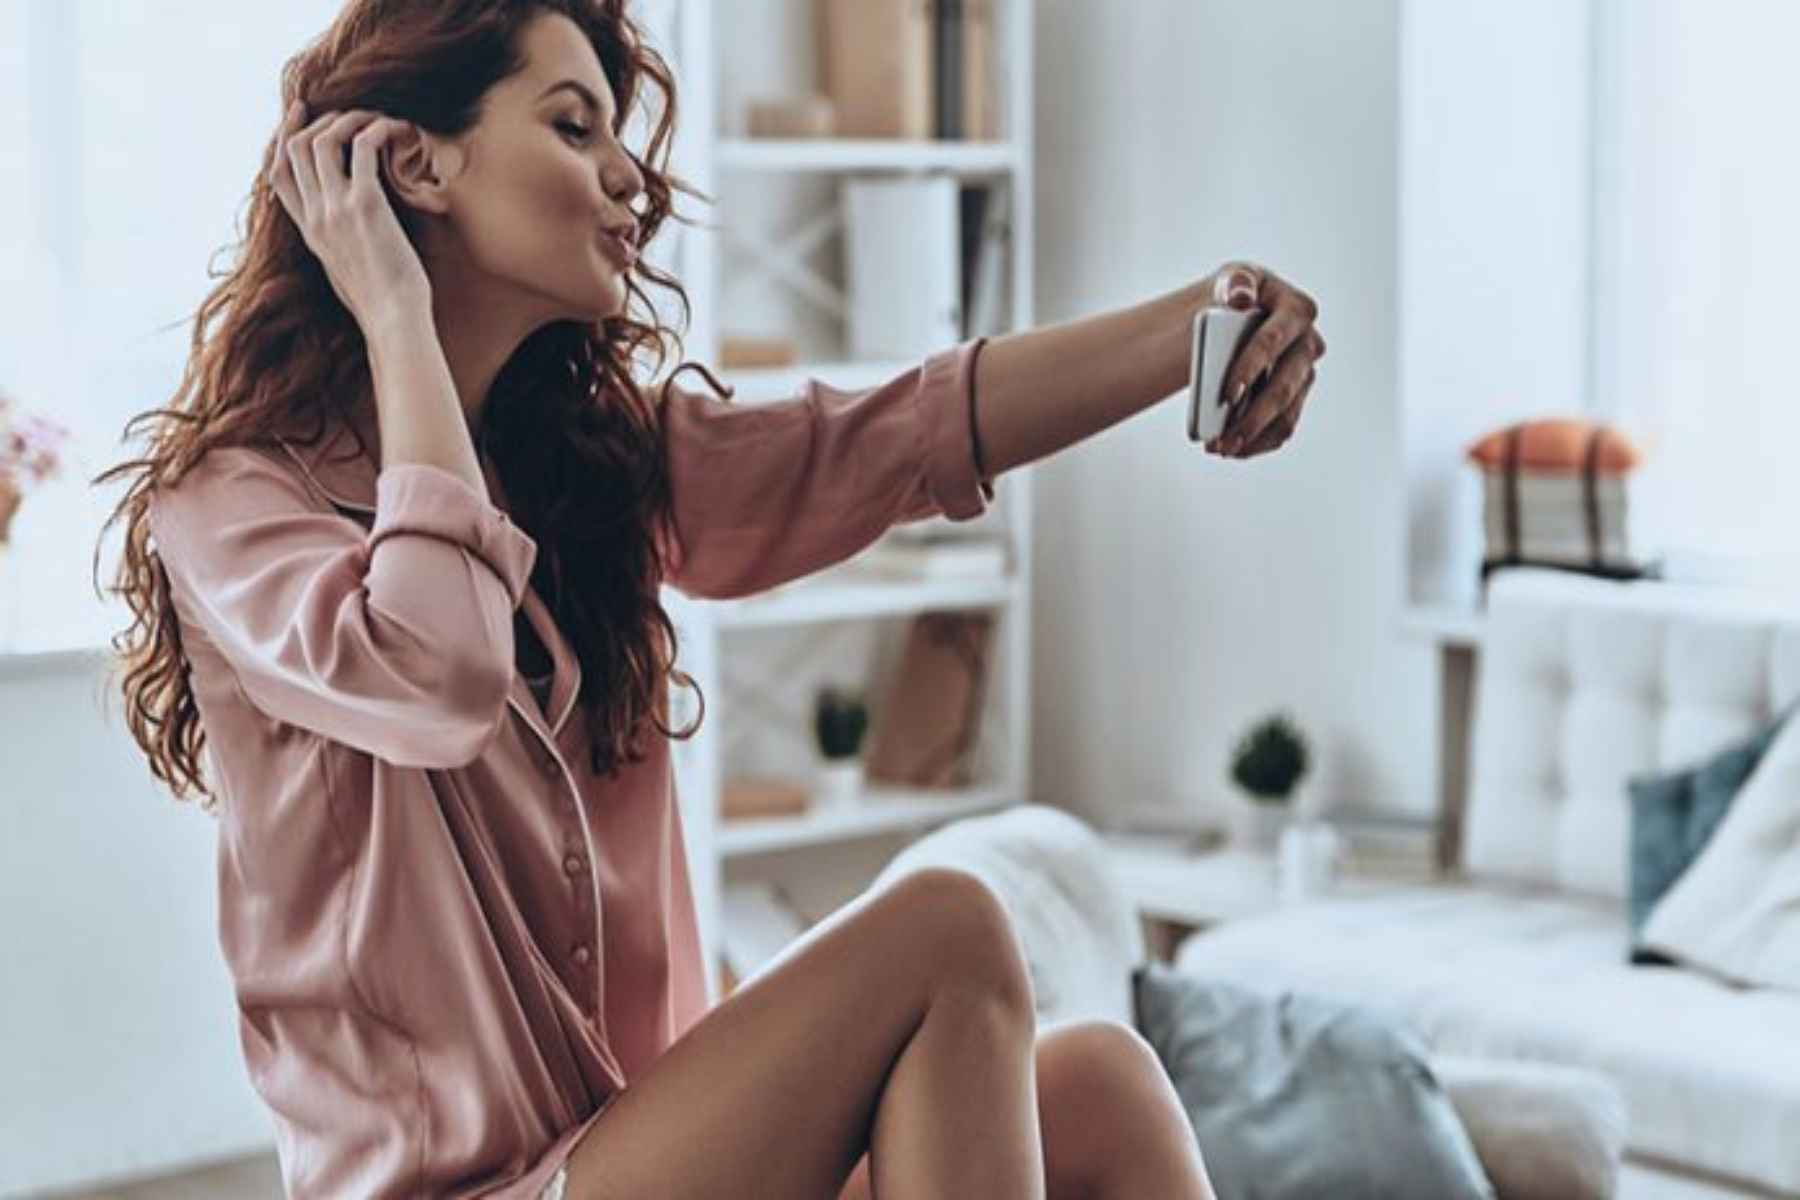 Sexting: Πώς μπορεί το sexting να βελτιώσει την σεξουαλική σας ζωή;